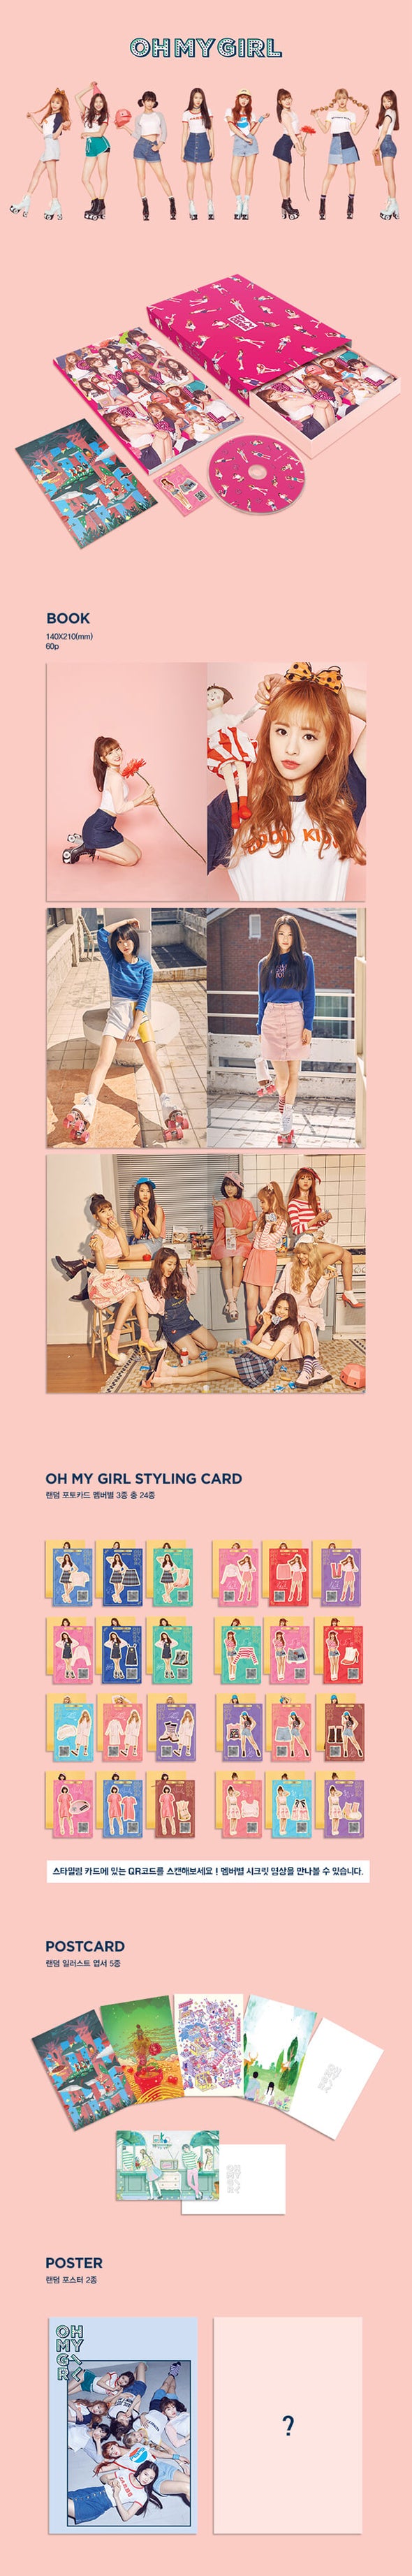 OH MY GIRL - Pink Ocean 3rd Mini Album